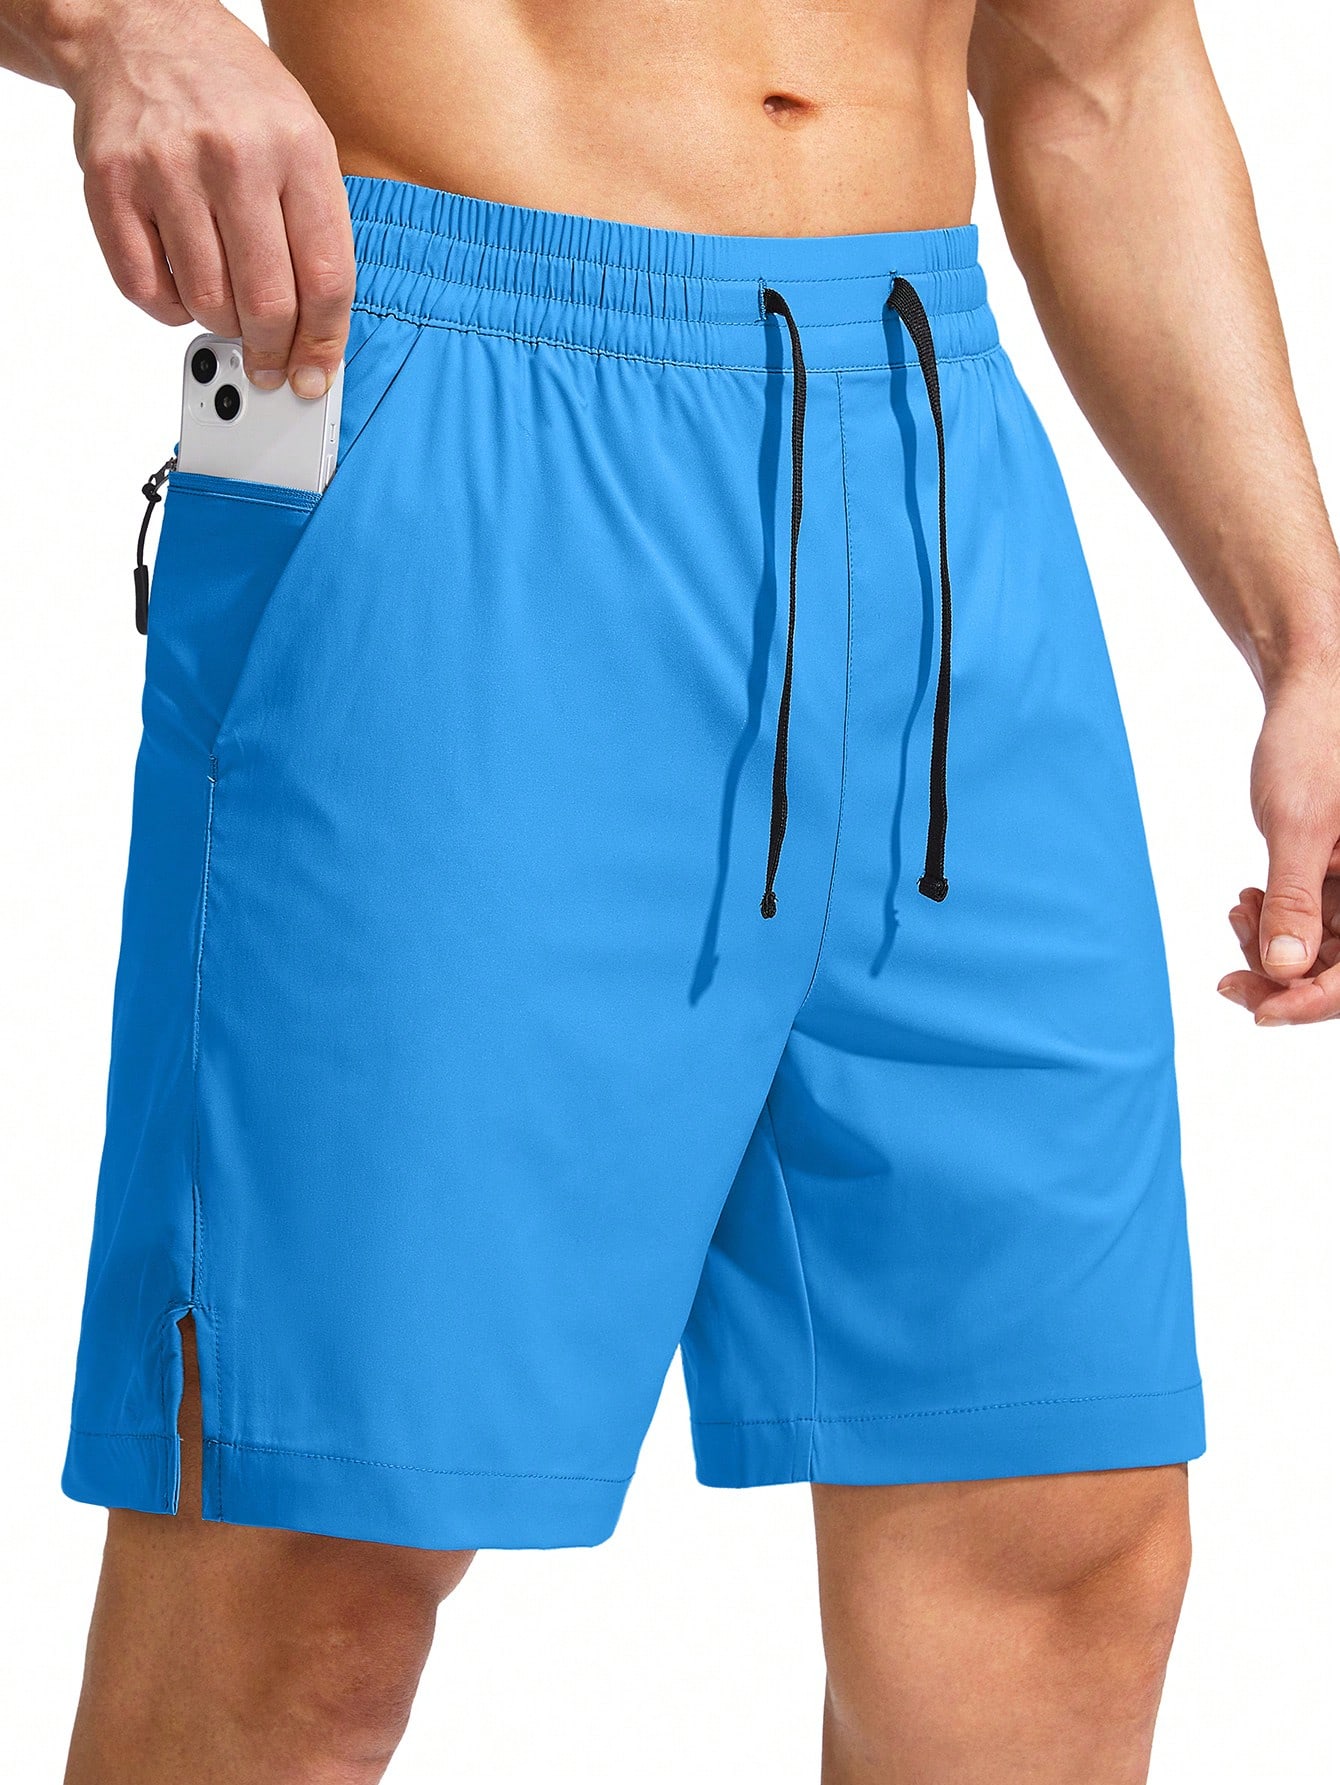 G Gradual G Gradual Мужские плавки Быстросохнущий купальный костюм Пляжные шорты для мужчин с карманами на молнии и сетчатой ​​подкладкой Серые шорты, синий